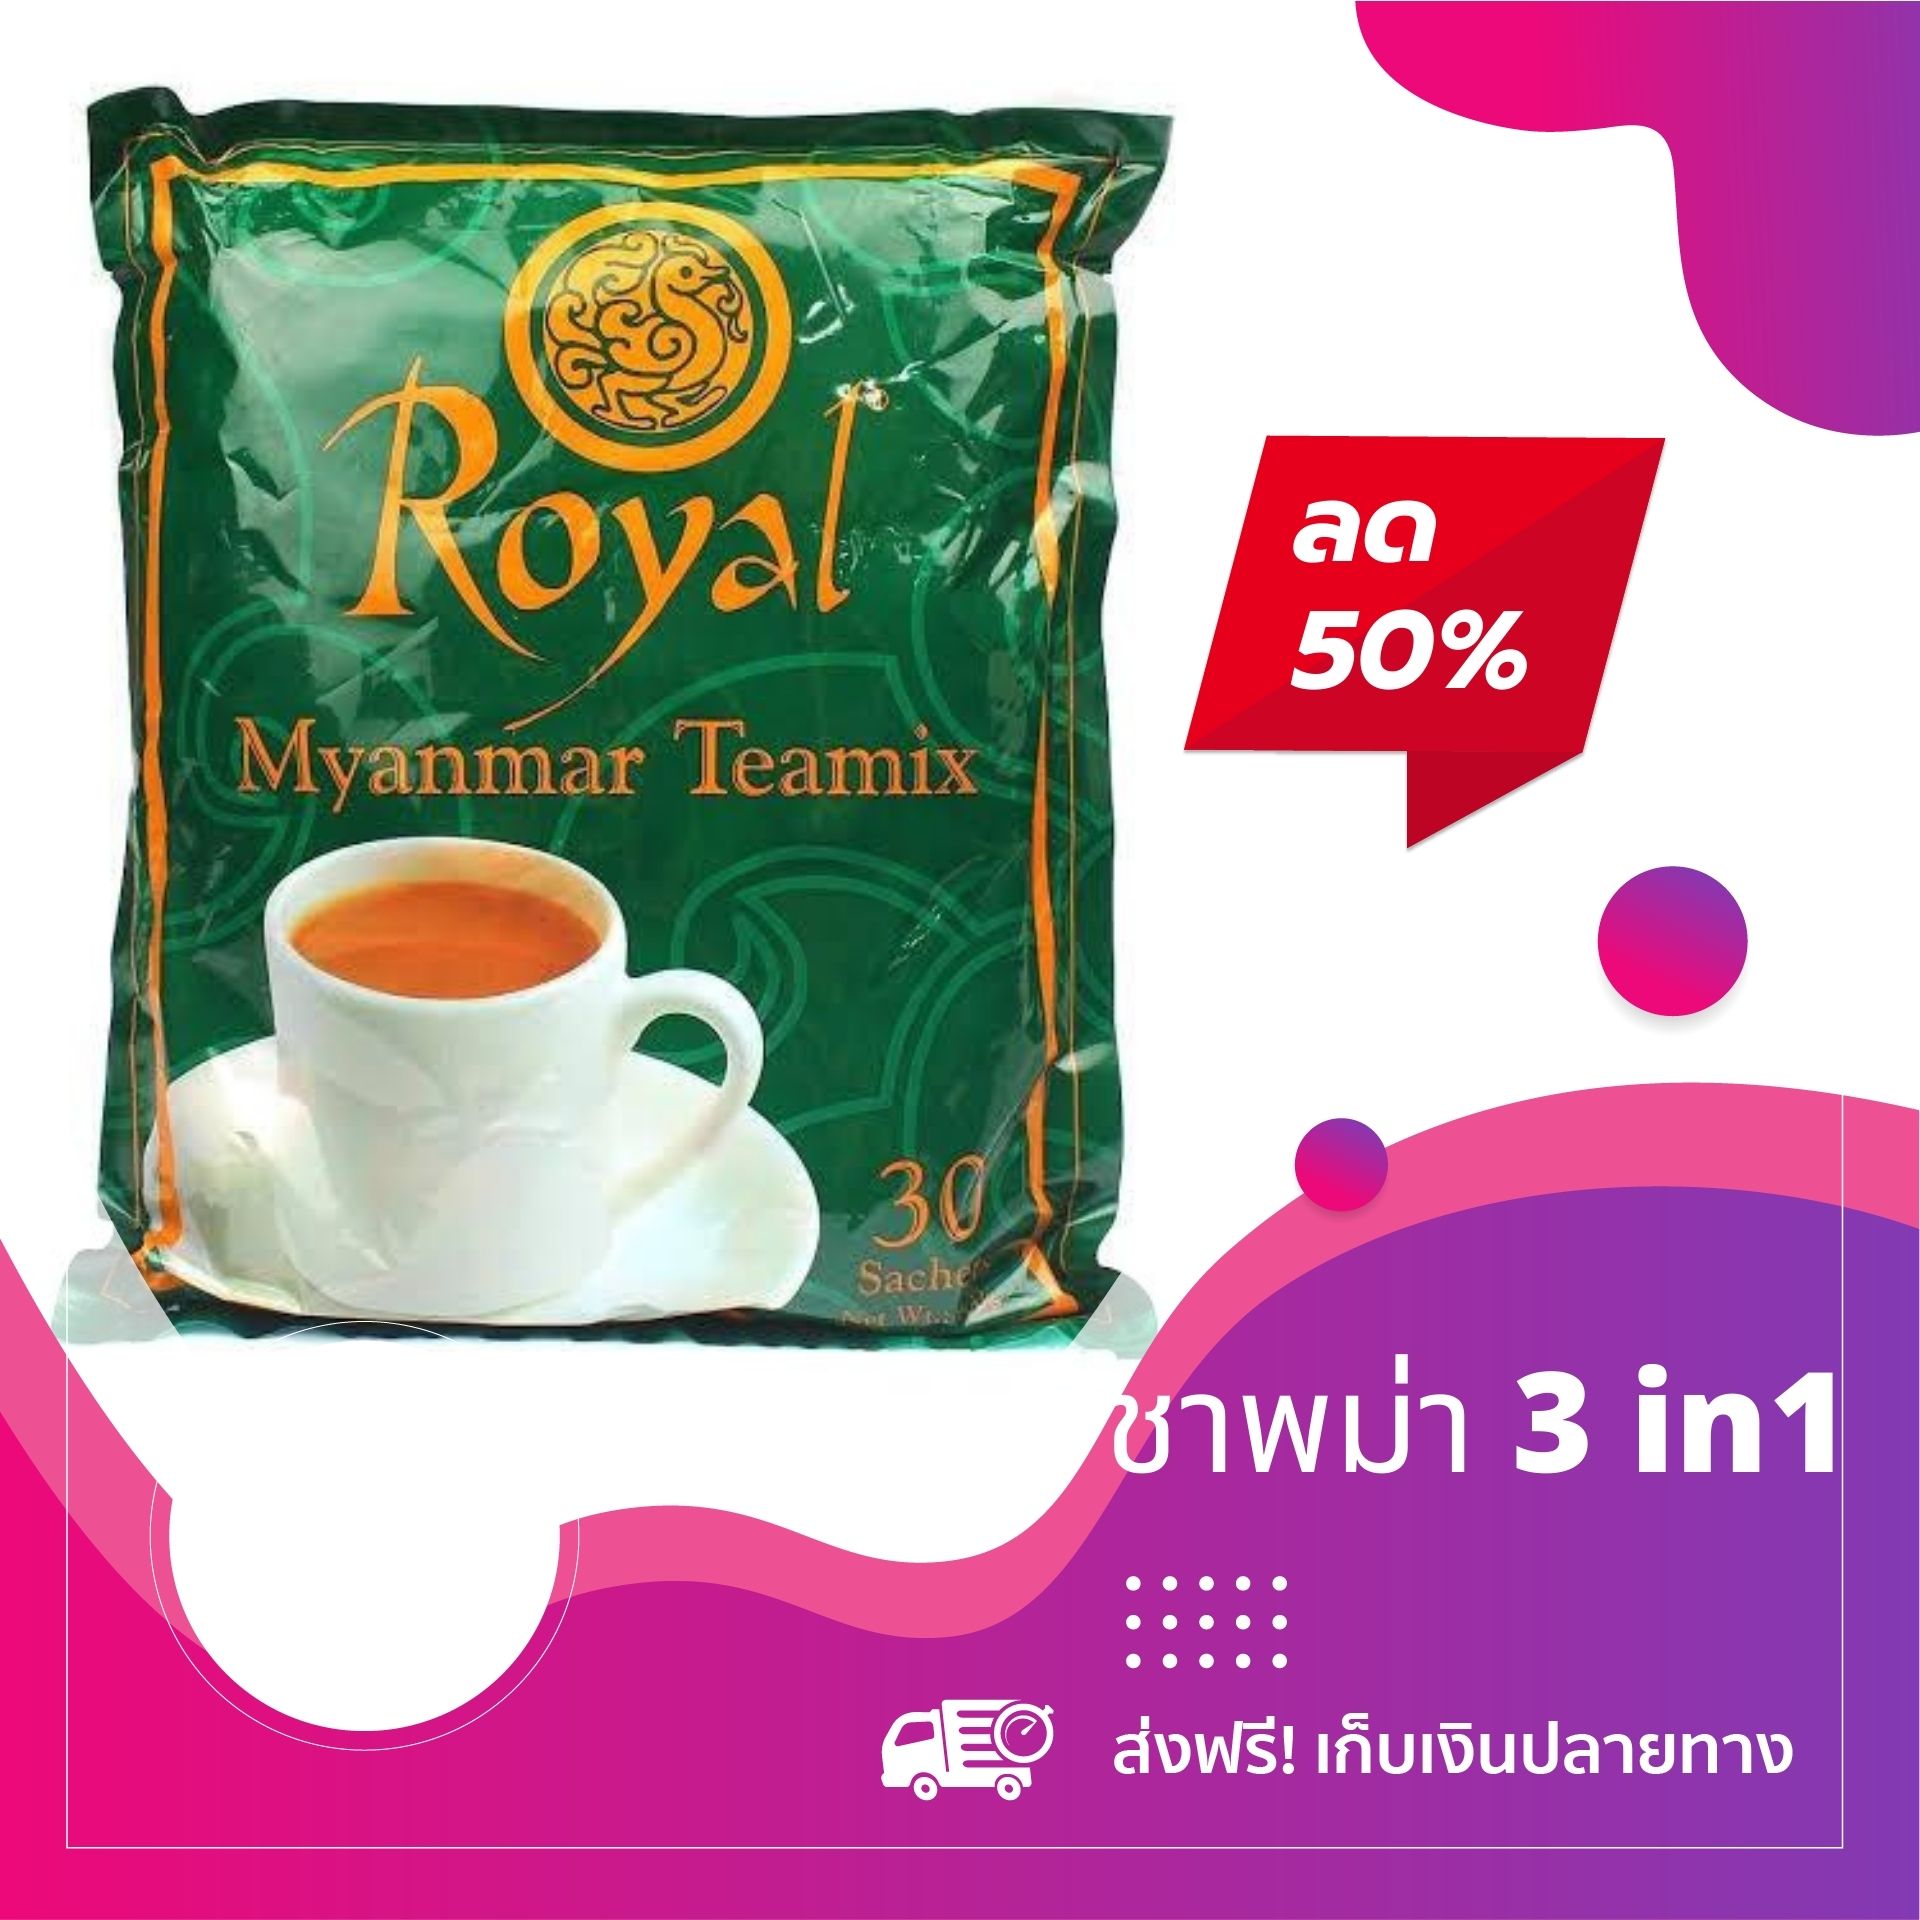 ?ลดพิเศษ?ชาพม่า Royal Myanmar tea mix ชานมพม่า 3in1  รสชาติหอมละมุน ไม่หวานมาก รับประกันว่าทานแล้วจะติดใจ ⚡พร้อมส่ง မြန်မာနို့လက်ဖက်ခြောက် 3in1